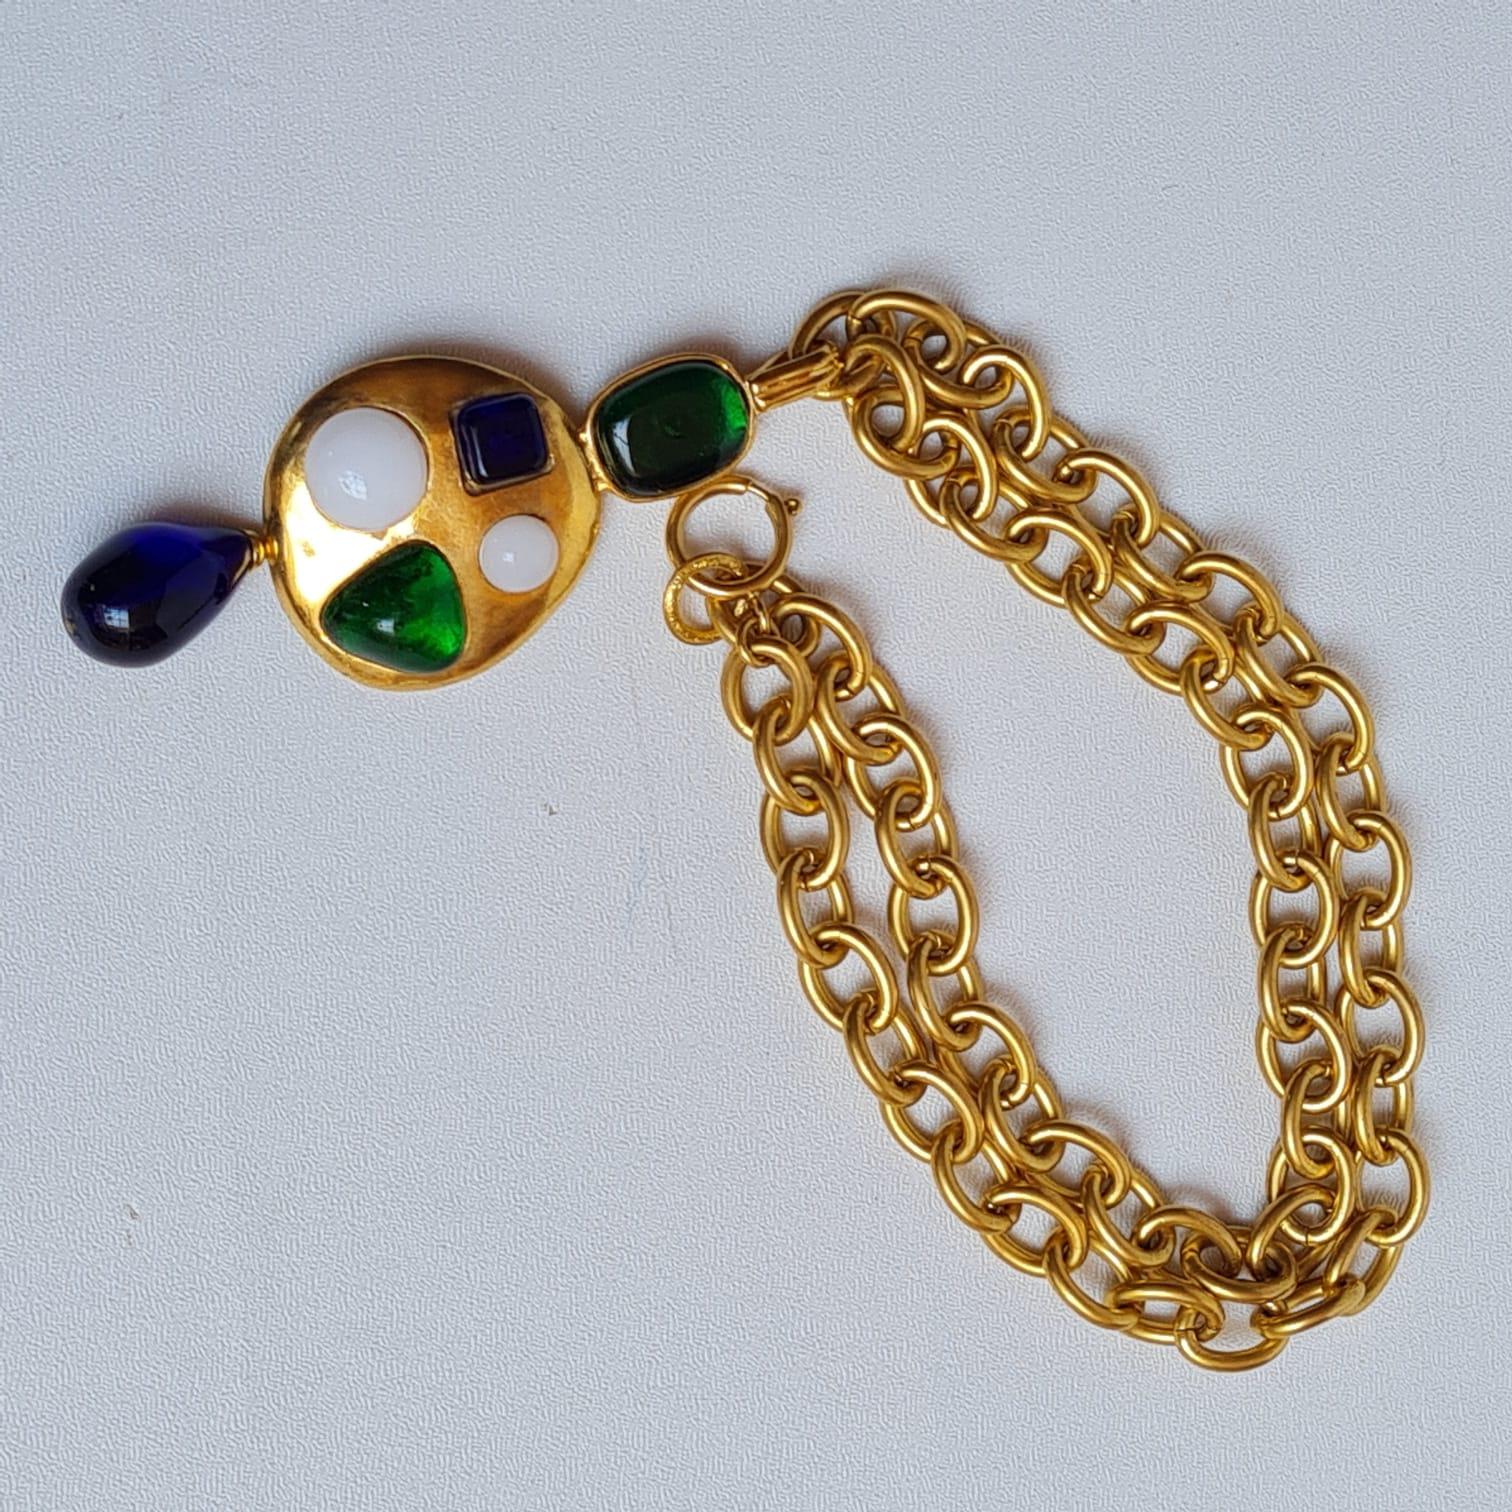  Chanel, rare collier vintage Gripoix byzantin en or avec perles pendantes, 1993 Unisexe 